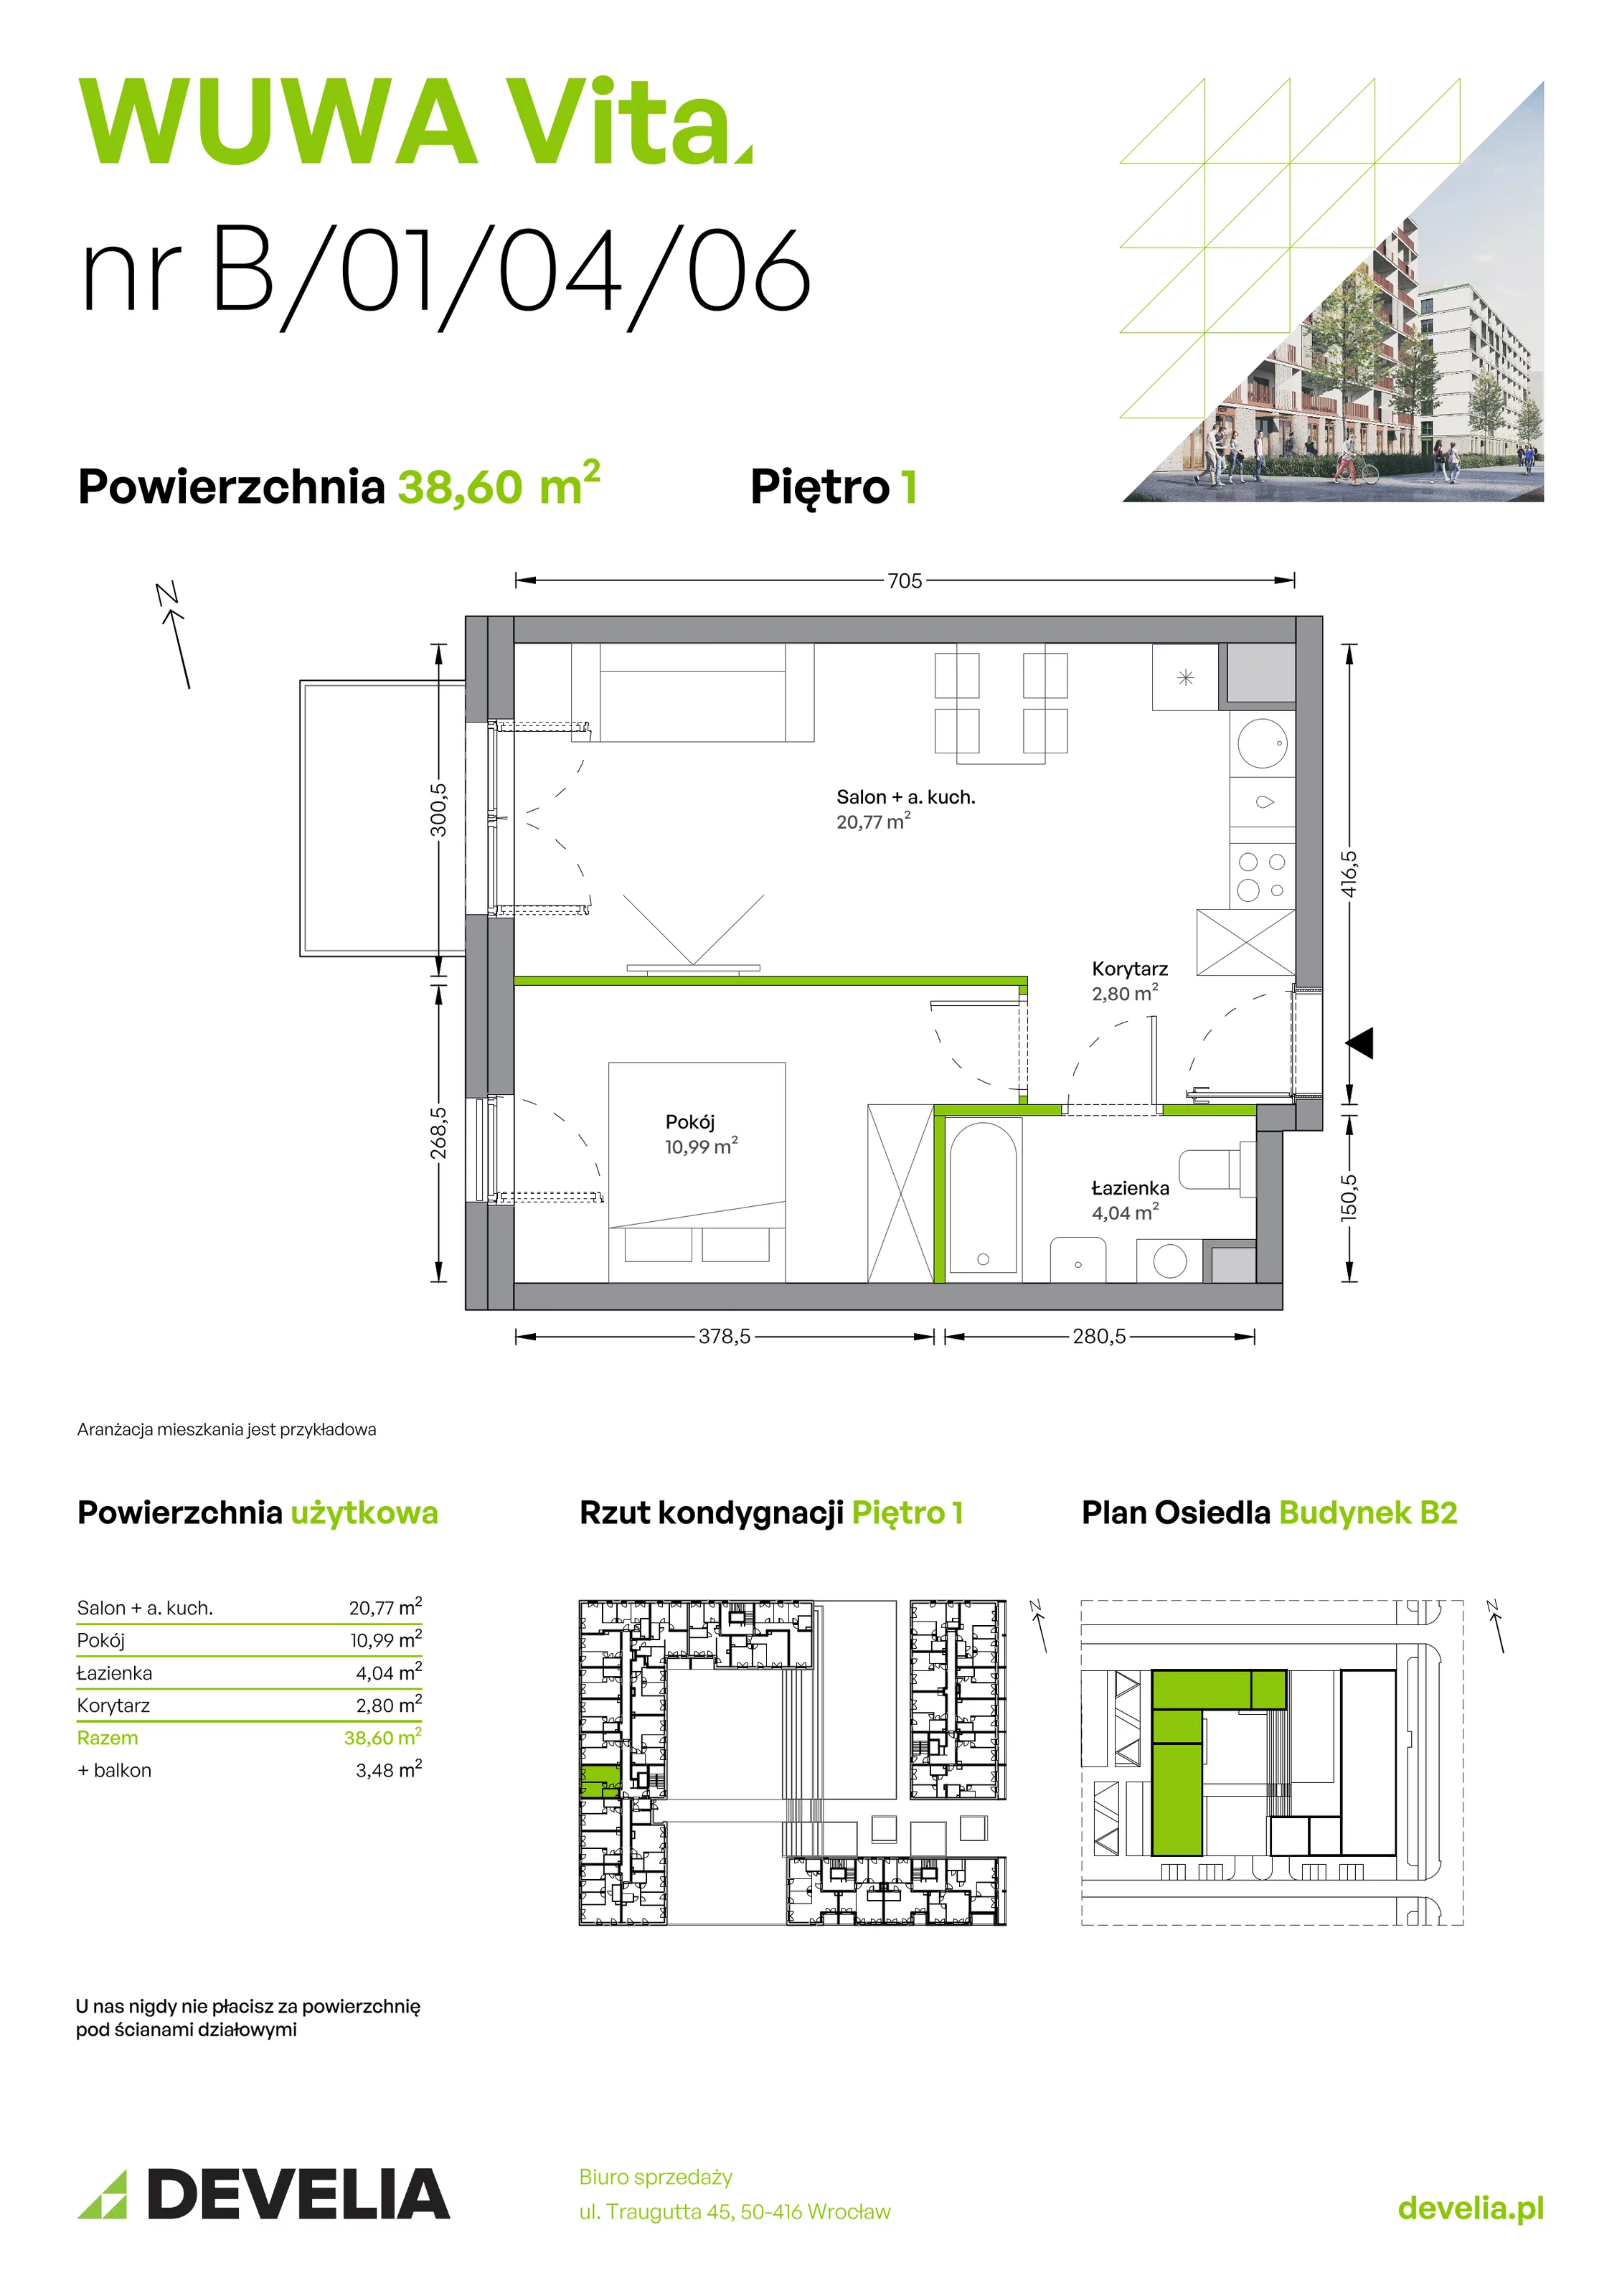 Mieszkanie 38,60 m², piętro 1, oferta nr B.01.04.06, WUWA Vita, Wrocław, Żerniki, Fabryczna, ul. Tadeusza Brzozy